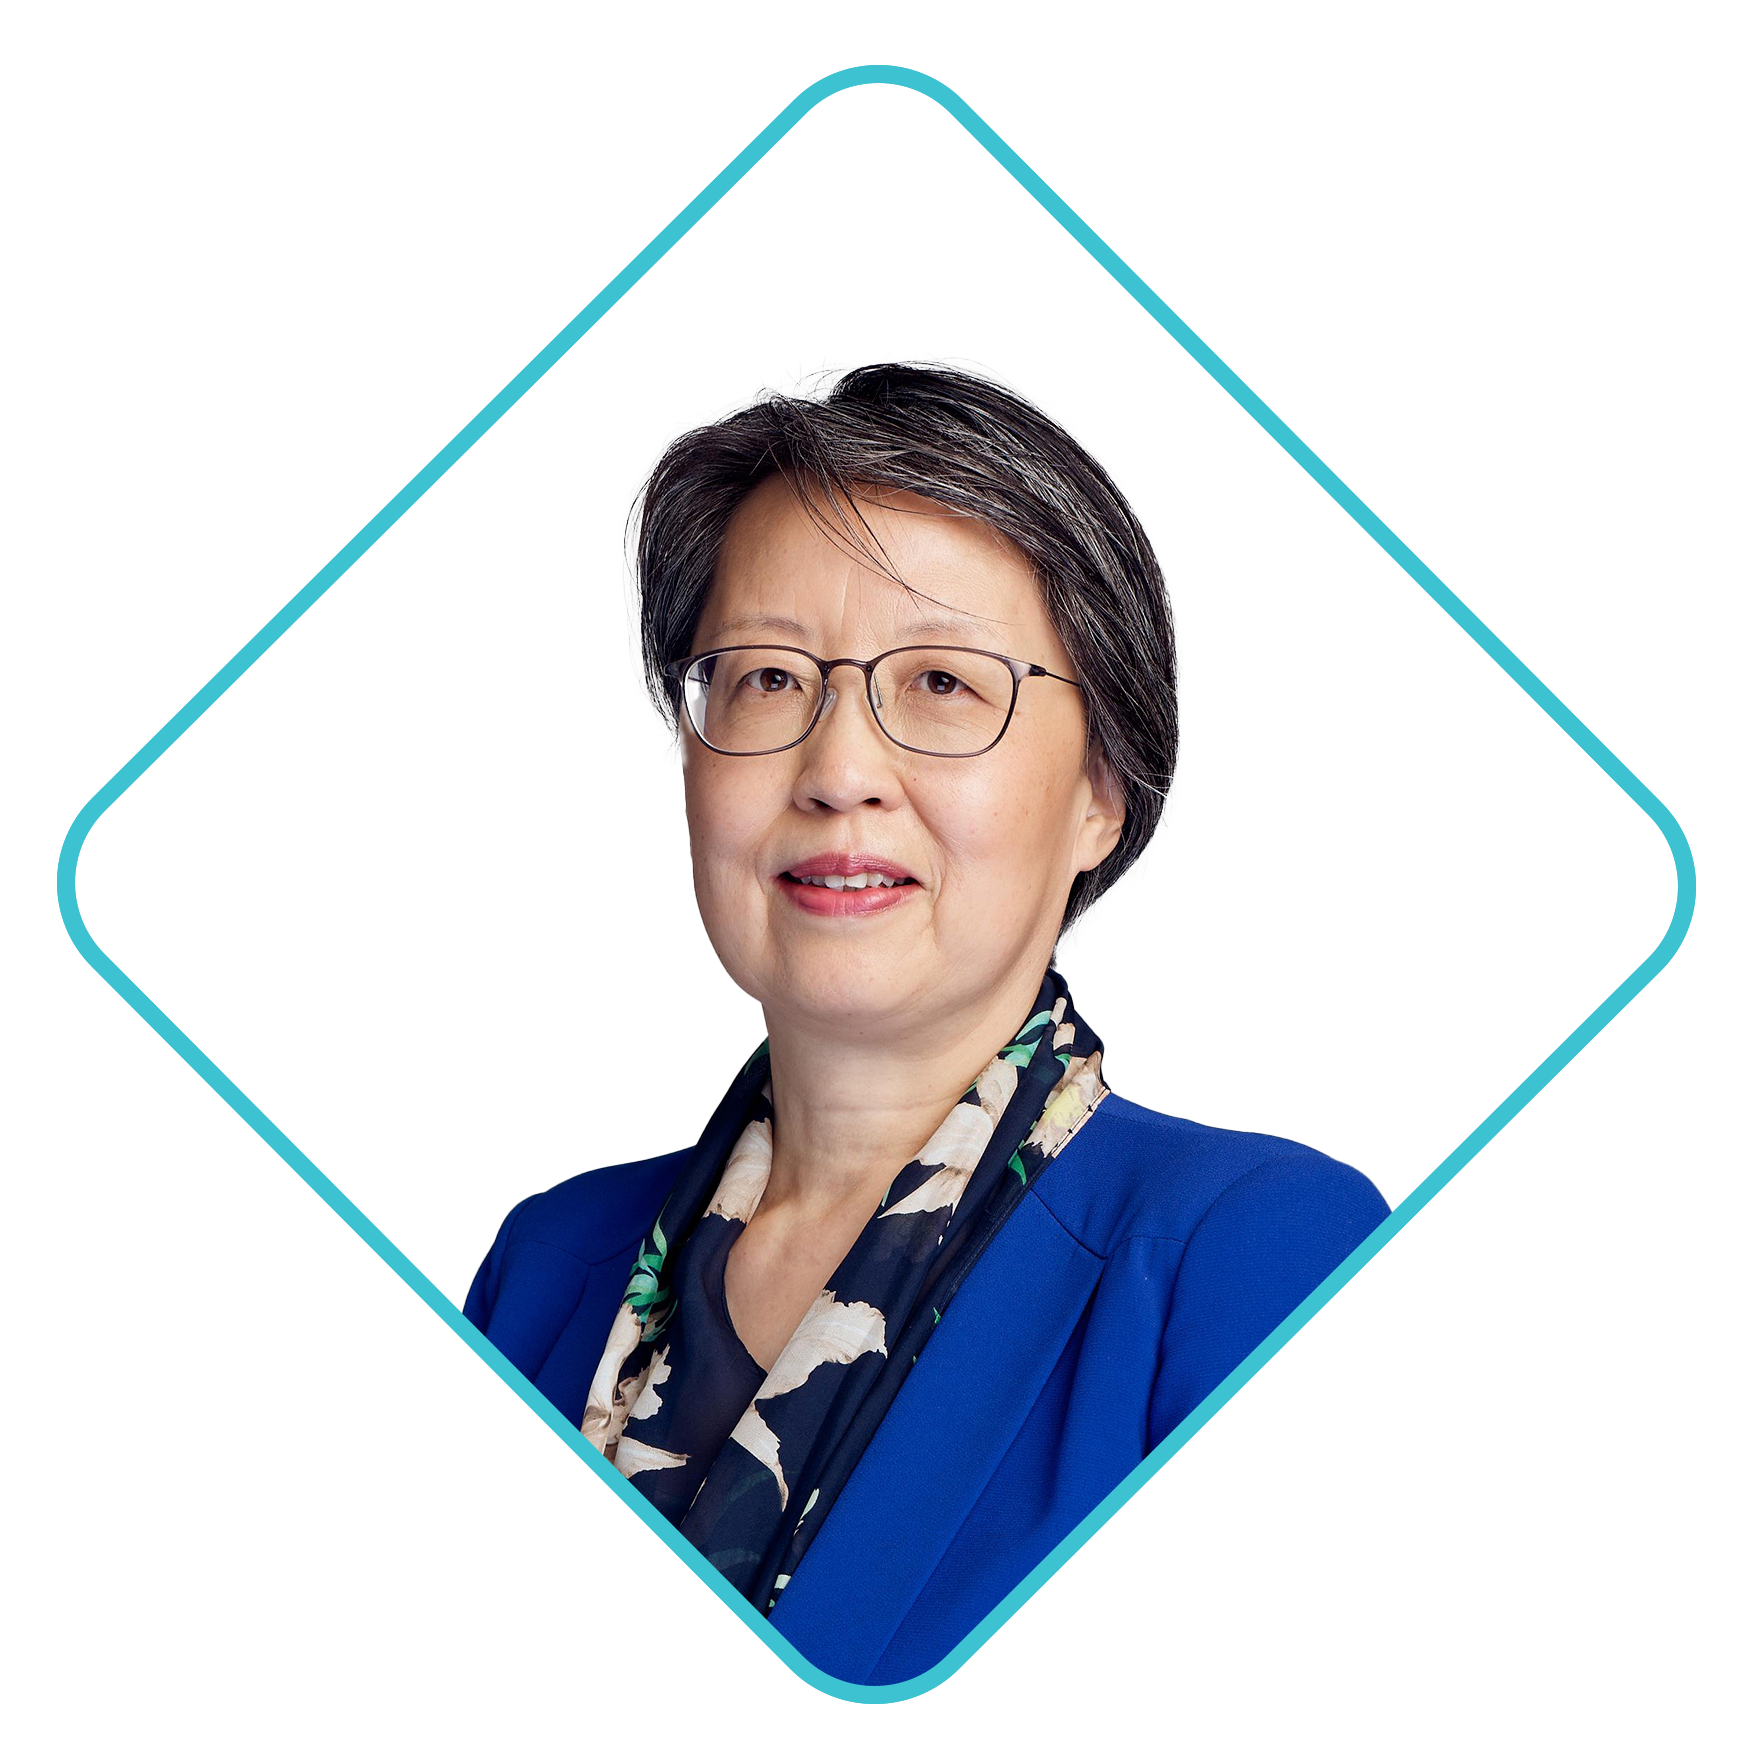 Ms. Xu Ying